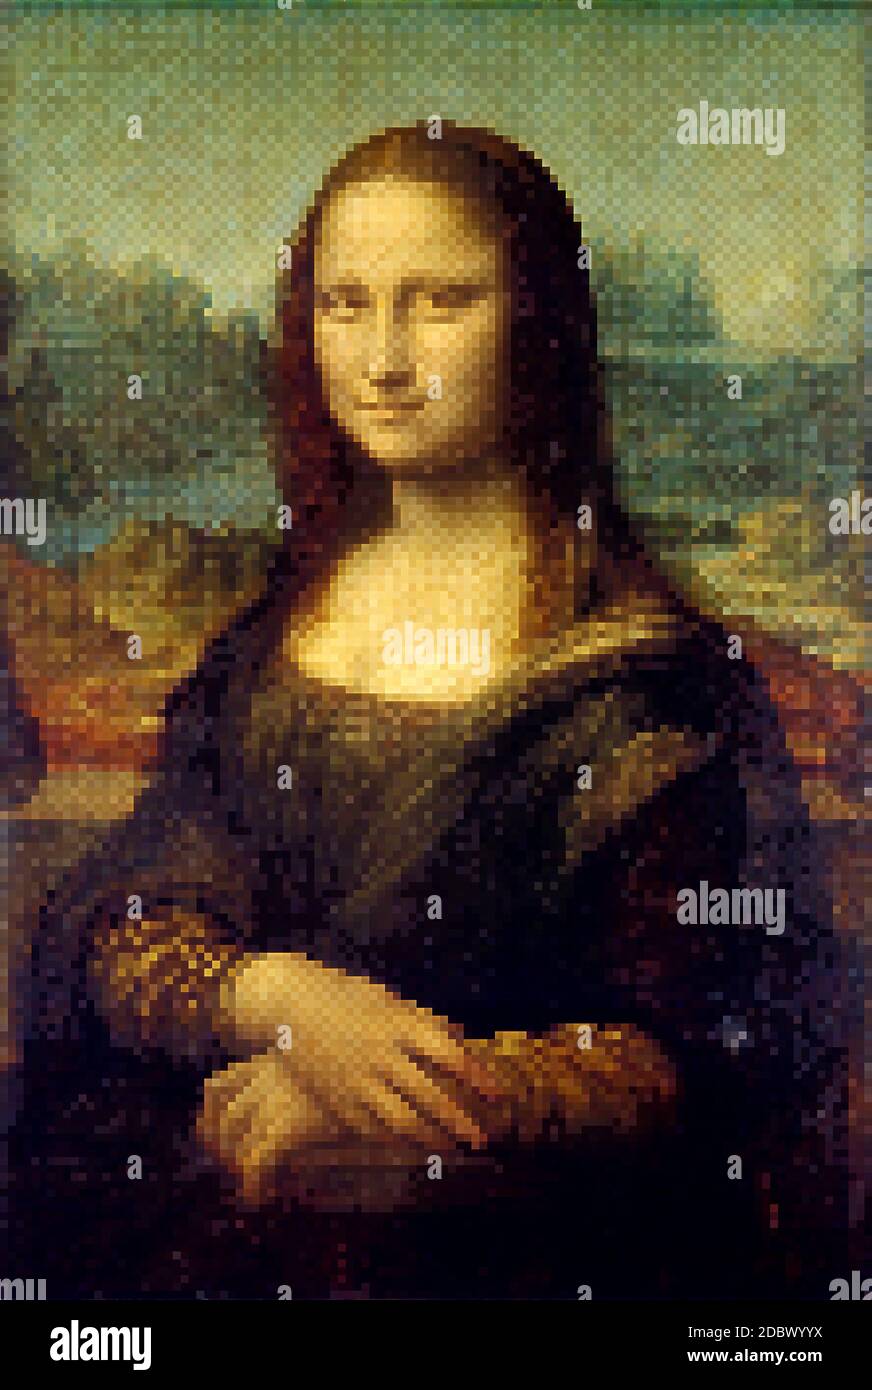 Mona Lisa - Leonardo da Vinci. Redrawing with pixel art style. Stock Photo